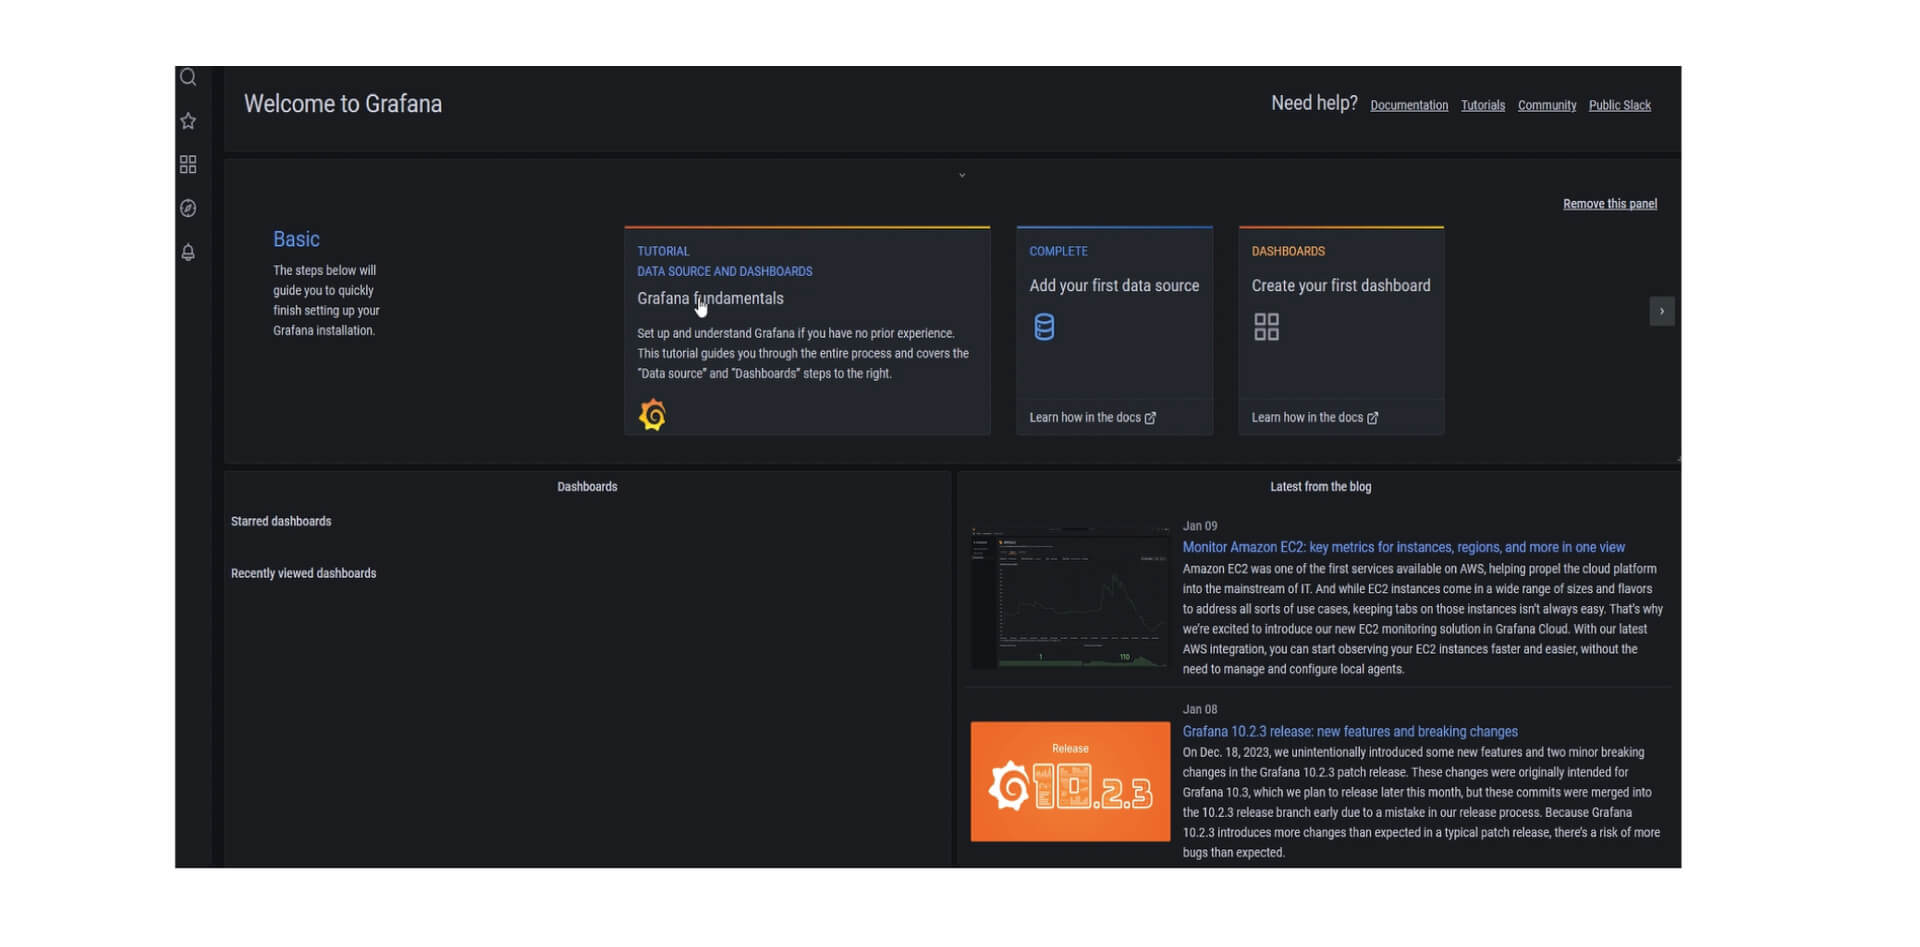 Das Bild ist ein Screenshot der Startseite des Grafana-Dashboards. Es zeigt eine Willkommensnachricht und eine schwarze Seitenleiste links mit Optionen wie 